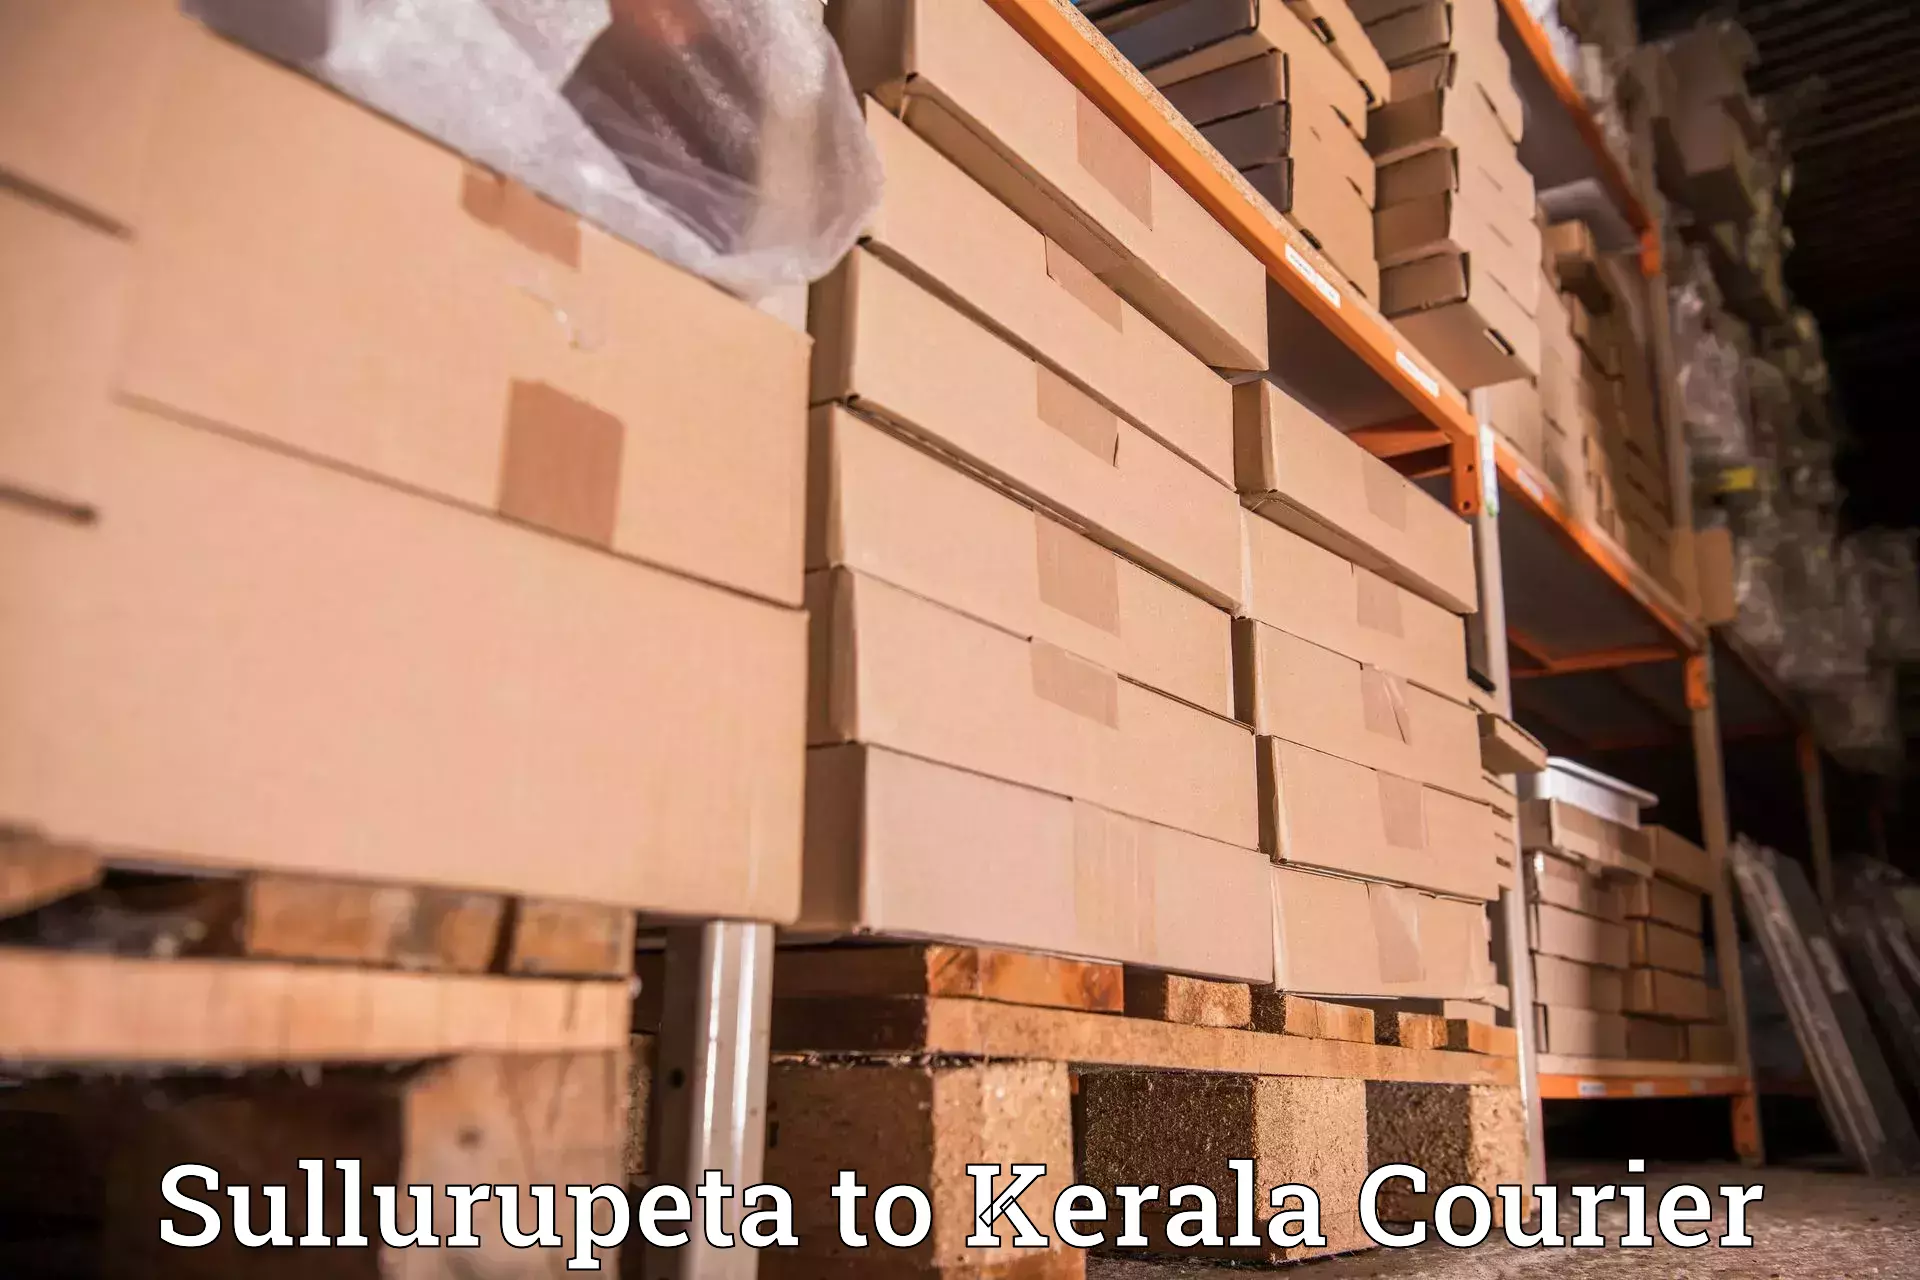 User-friendly delivery service Sullurupeta to Alappuzha